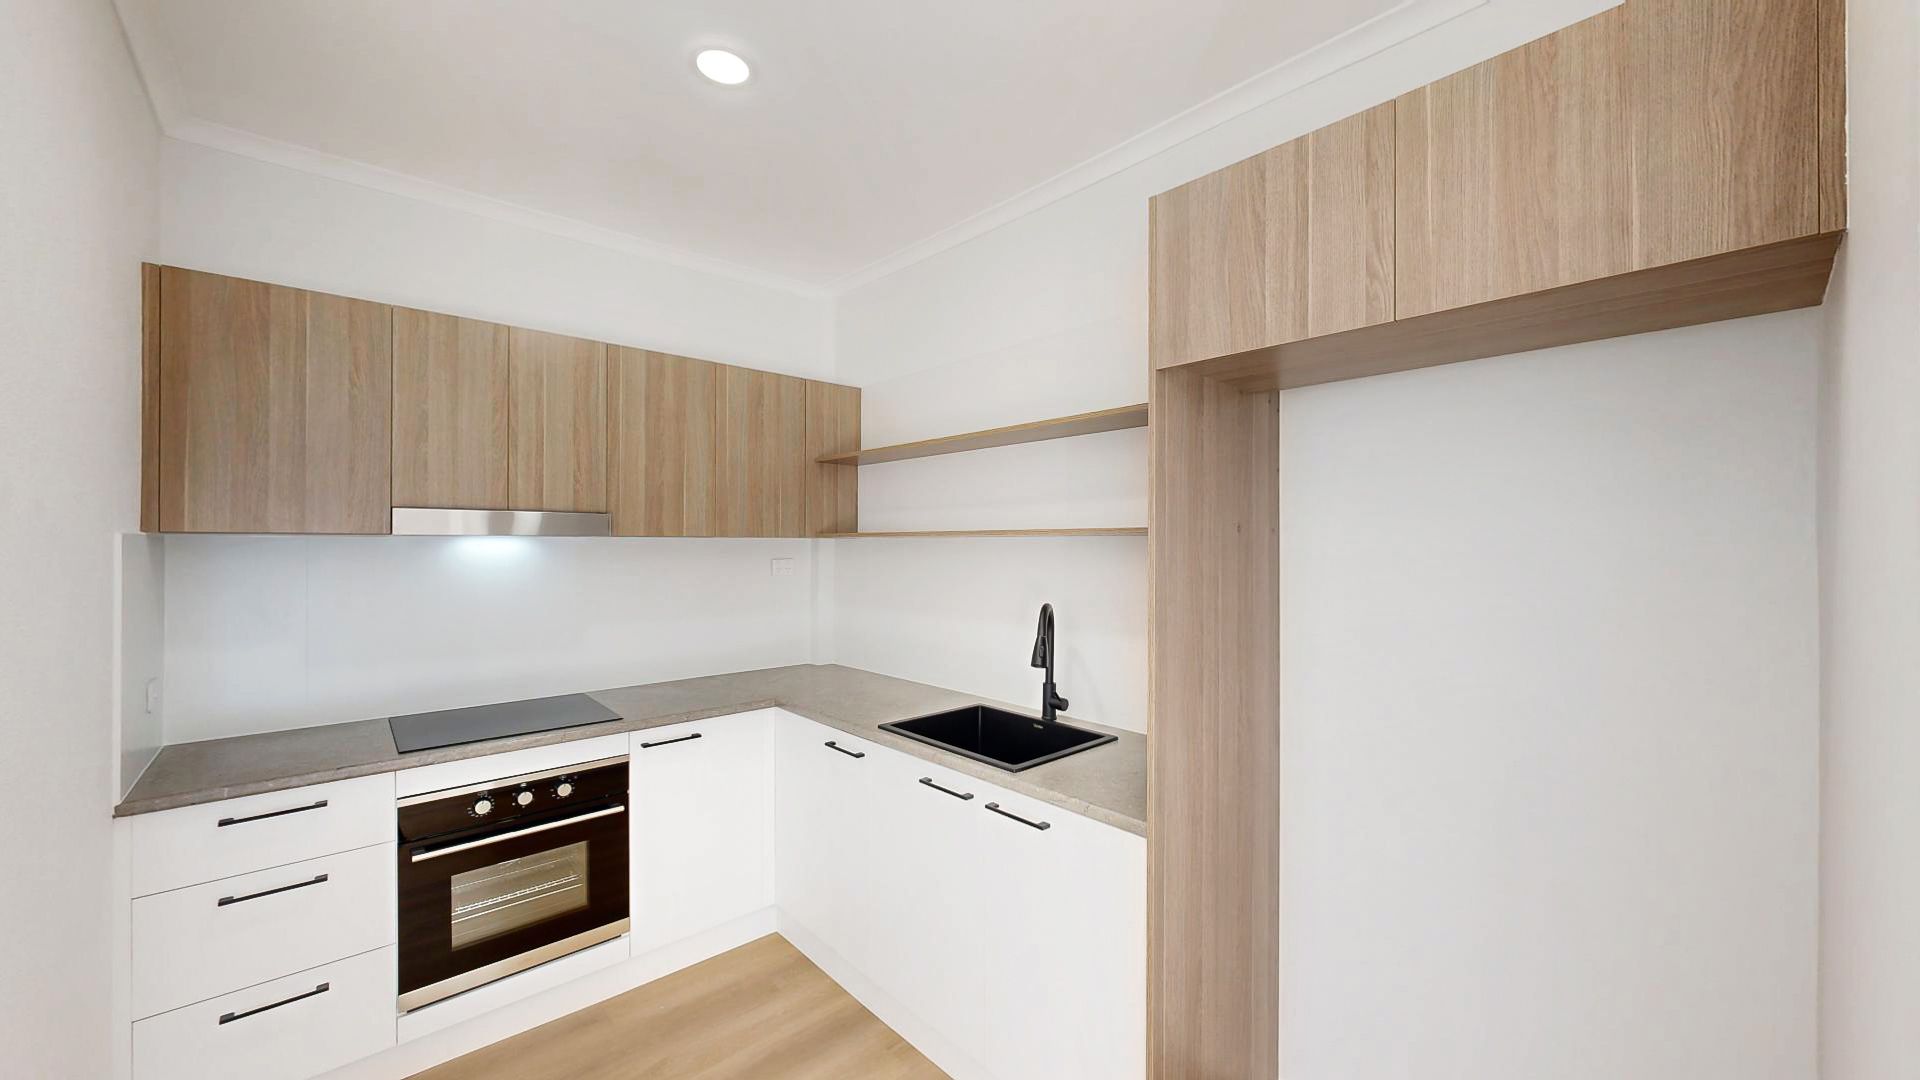 1 bedrooms Apartment / Unit / Flat in 16/5 Mowatt Street QUEANBEYAN NSW, 2620